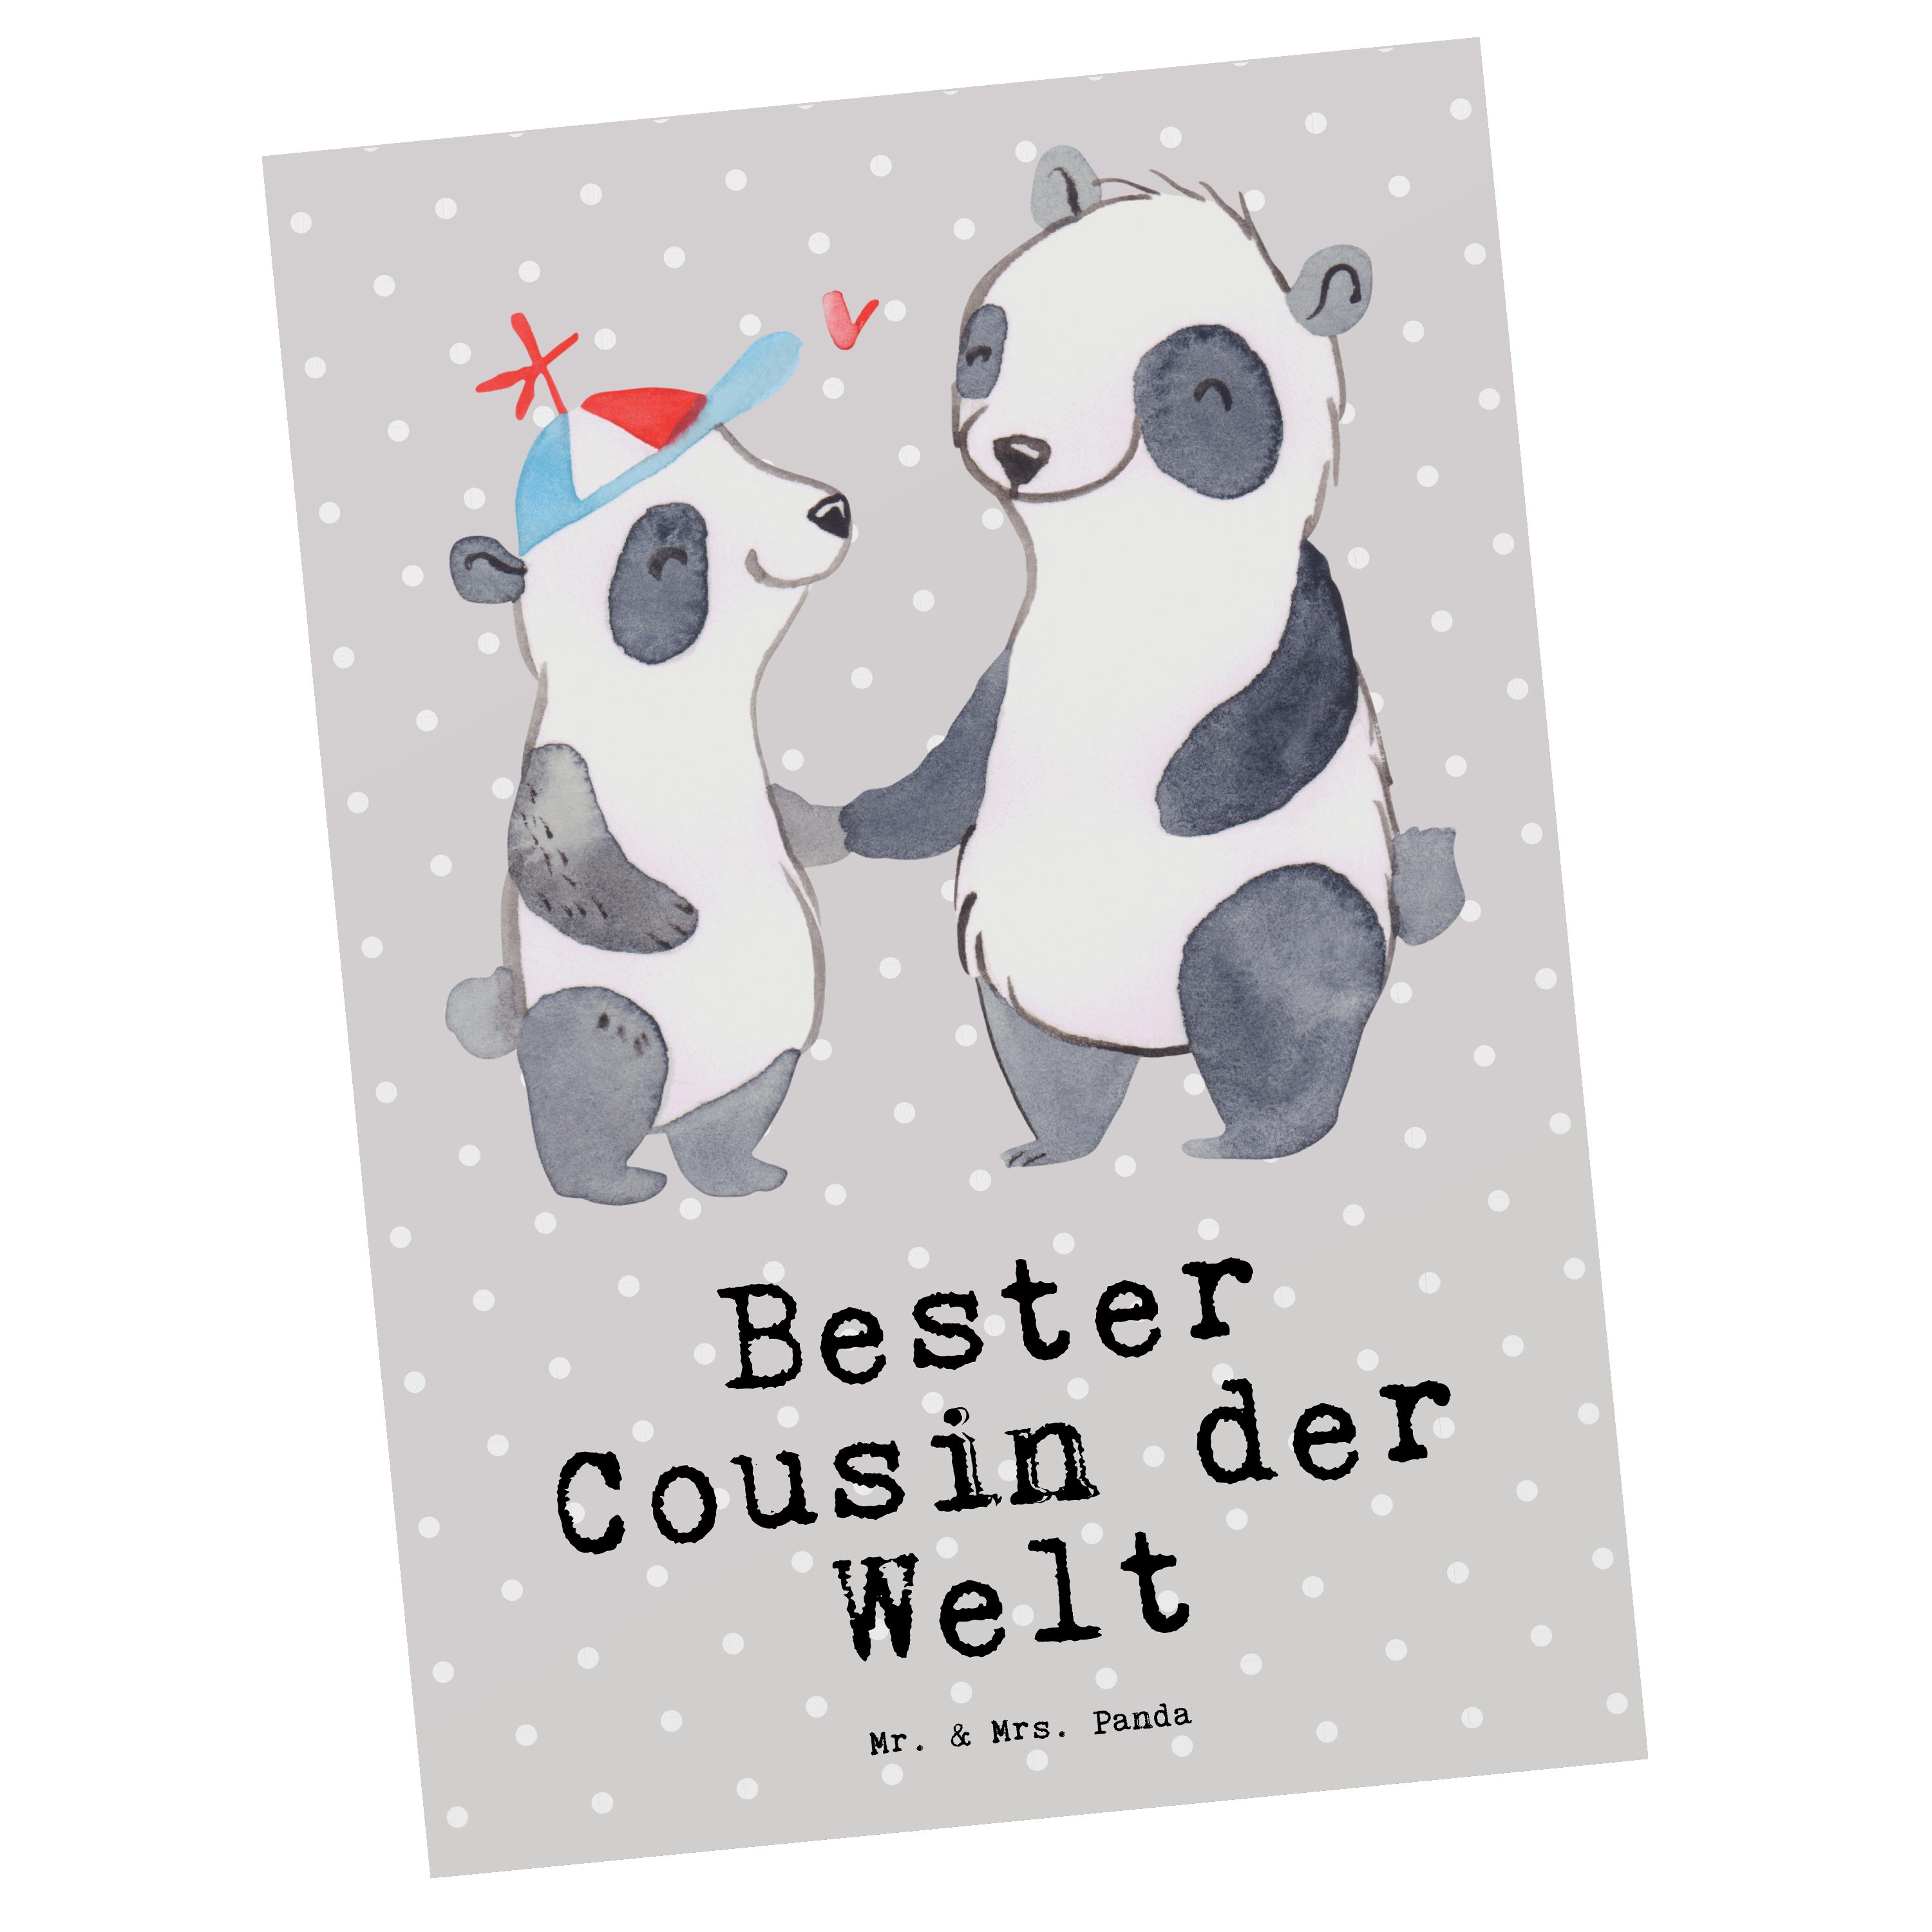 der Panda Cousin Mr. Welt Geburtstagska - & Mrs. - Bester Grau Pastell Geschenk, Panda Postkarte